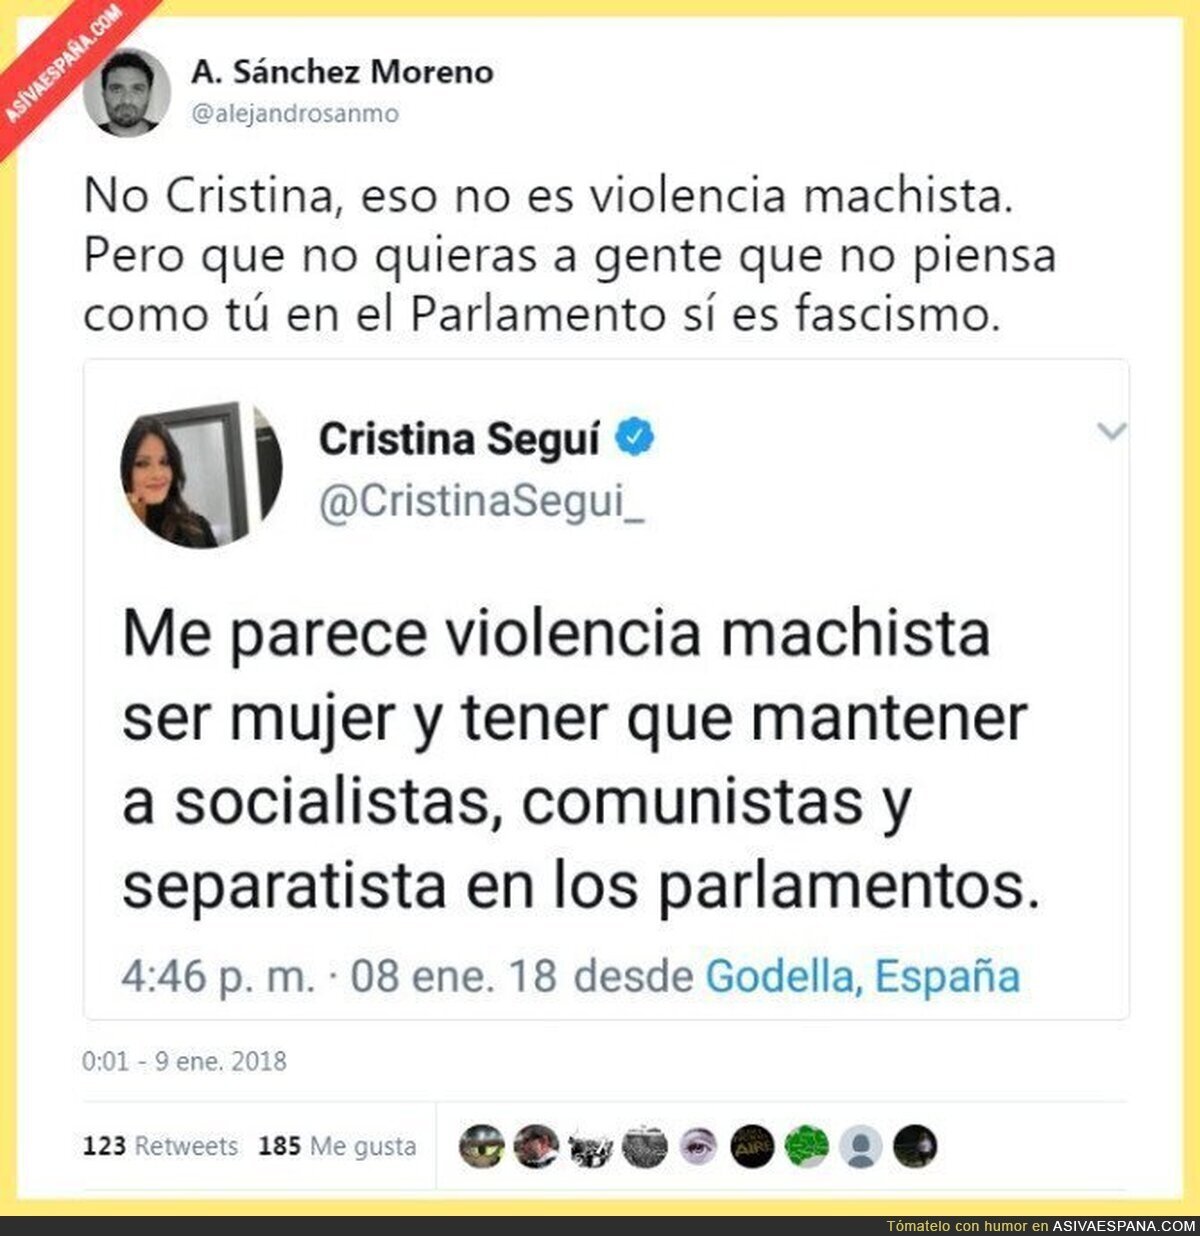 Cristina Segui de nuevo marcándose un tanto de ridiculez suprema